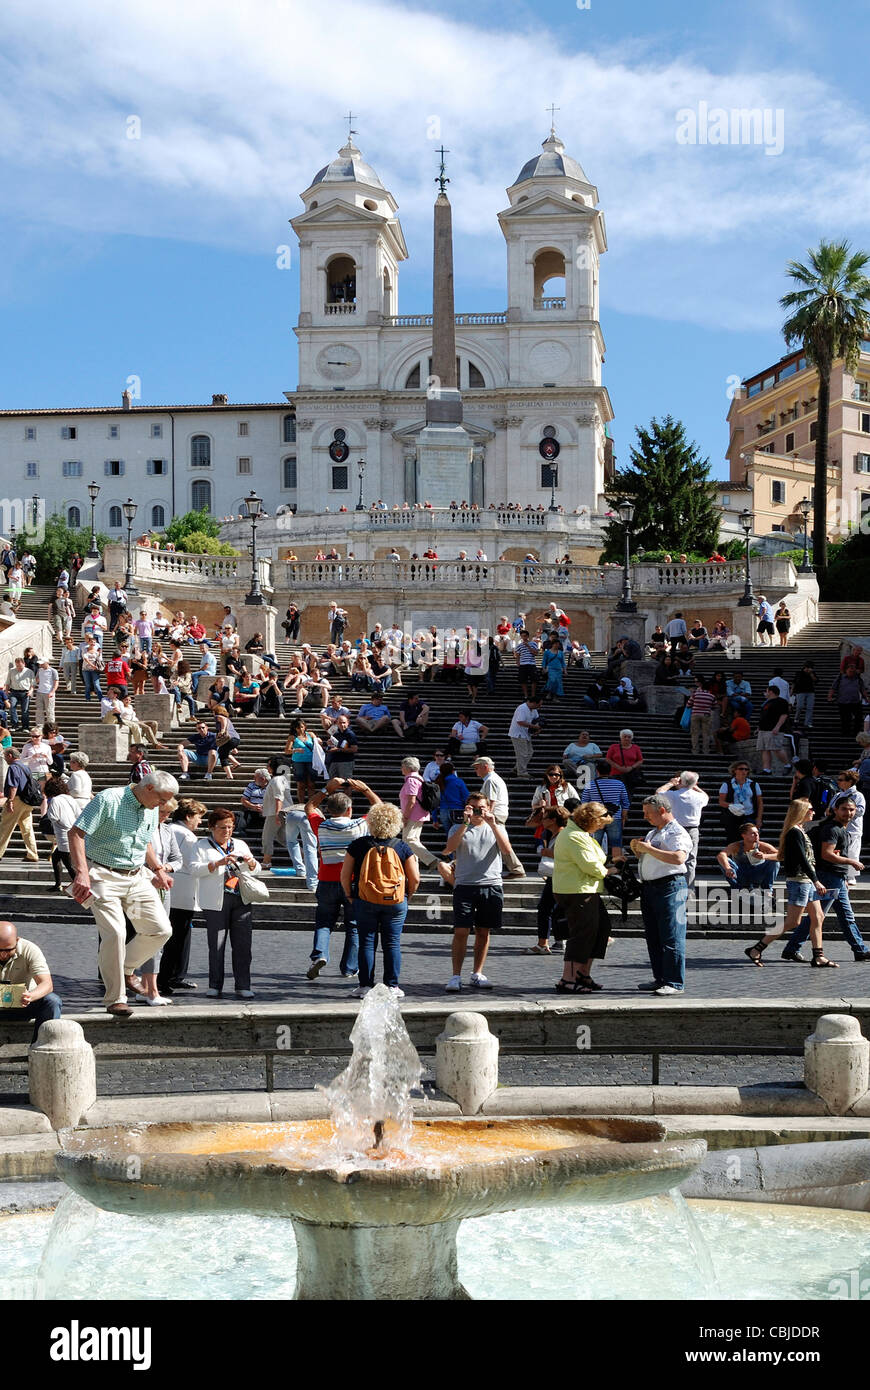 Spanish steps of the Piazza di Spagna in Rome with the church Trinita dei Monti. Stock Photo